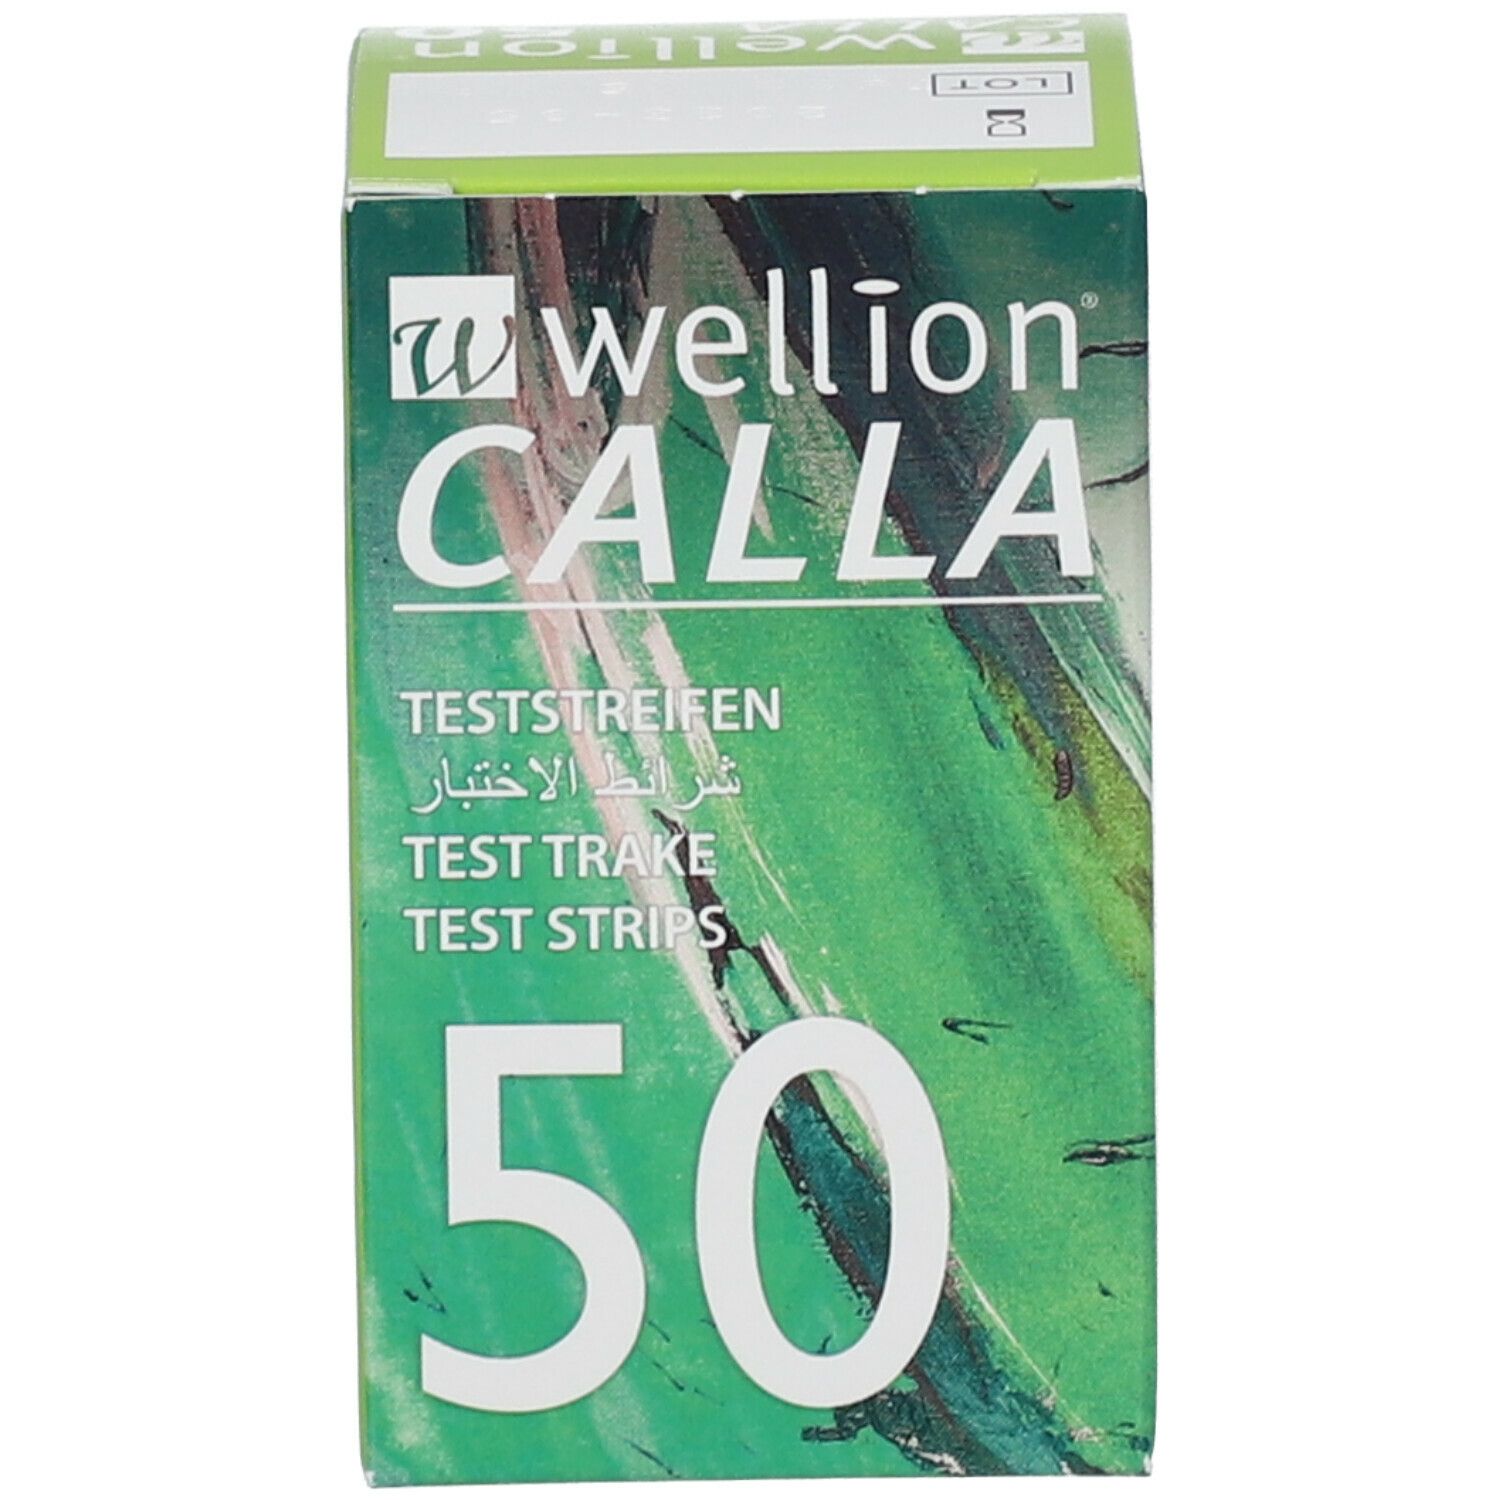 wellion® CALLA Teststreifen